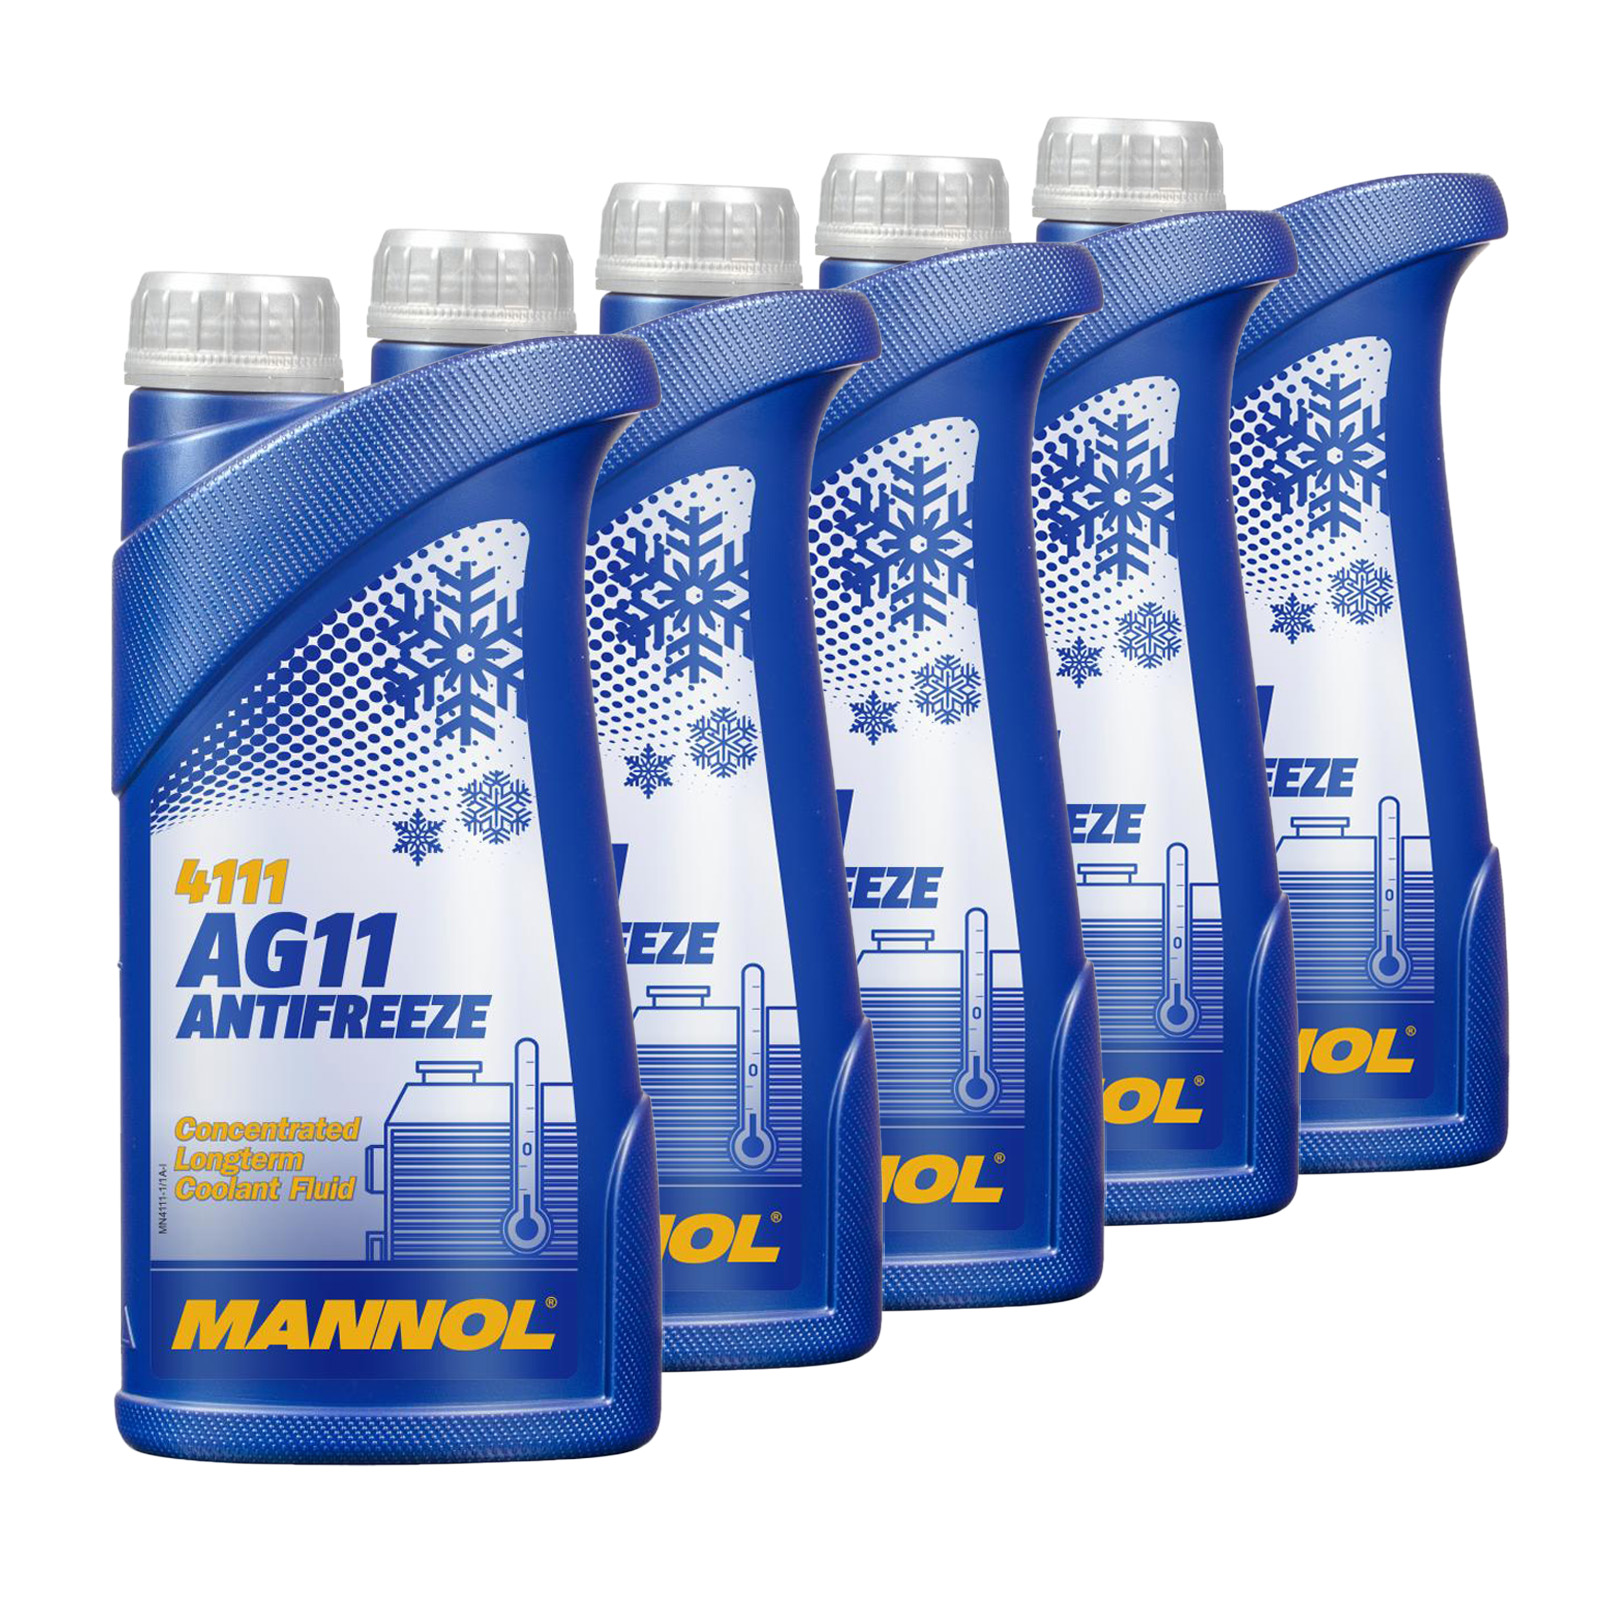 5 Liter (5x1) MANNOL Longterm Antifreeze AG11 Kühlerfrostschutz Konzentrat blau